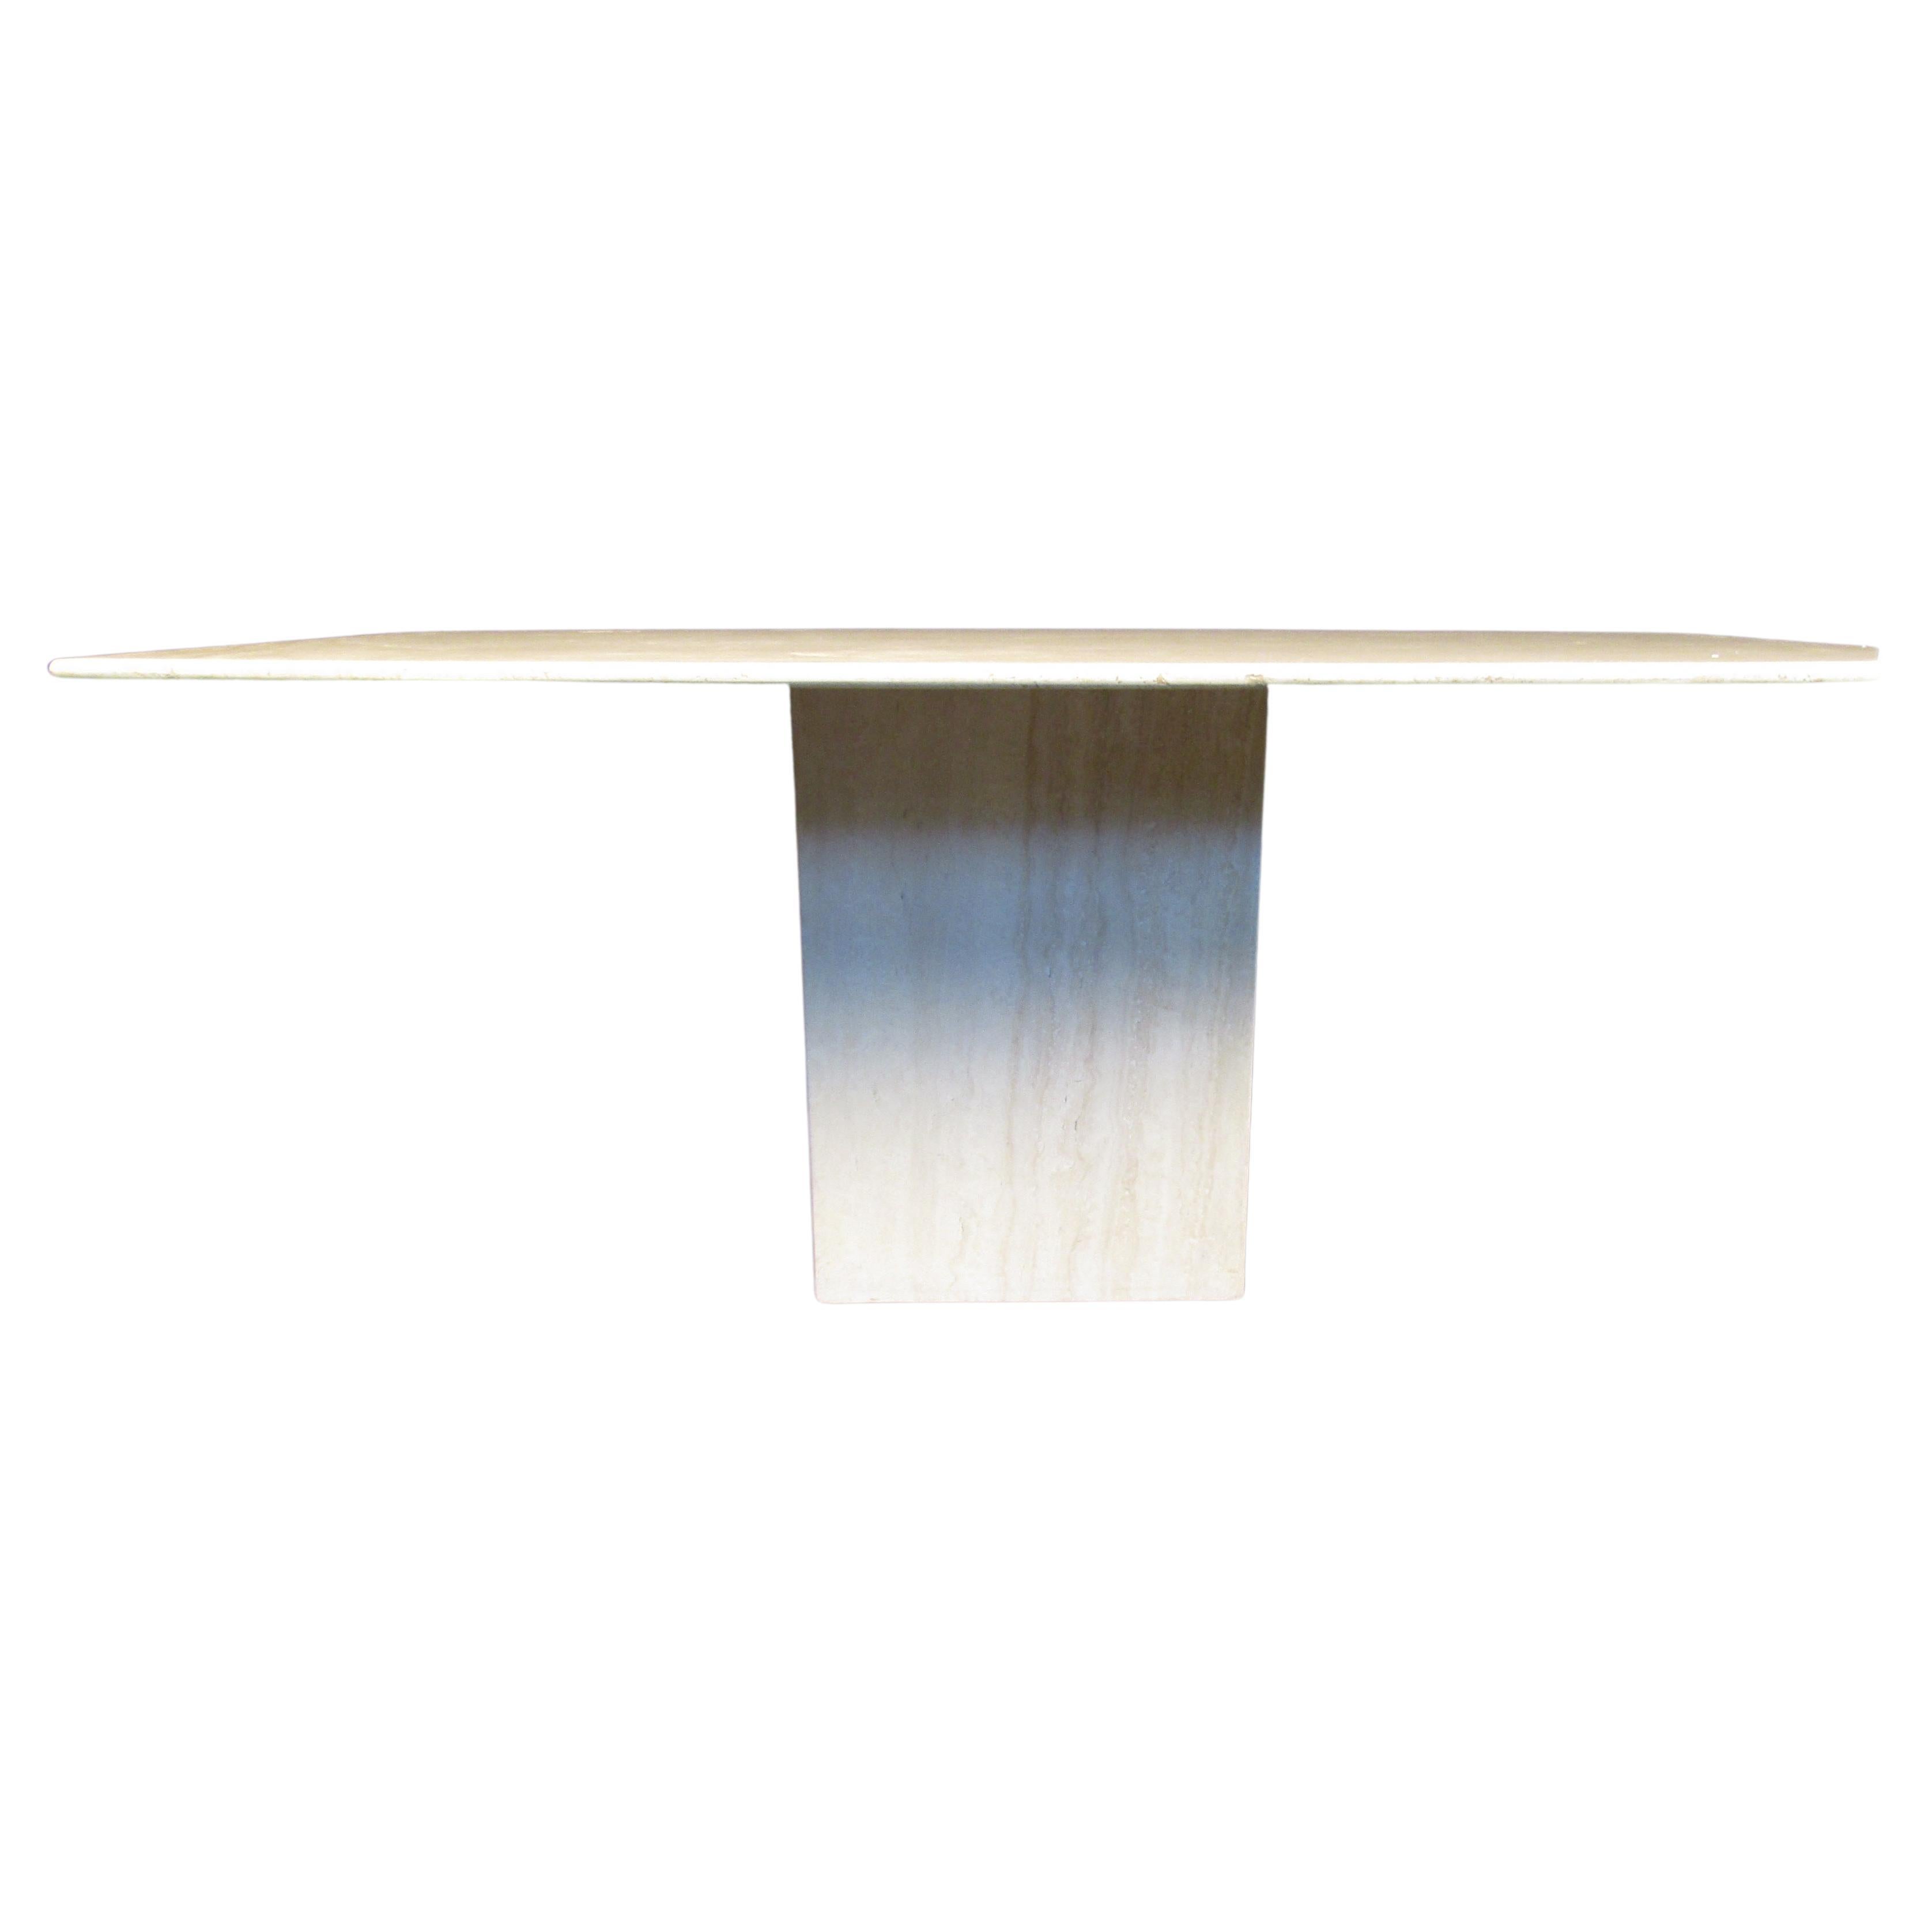 Dieser Esstisch aus Marmor hat eine rechteckige Platte und einen Sockel aus Vollmarmor. Dieses mit italienischem Einfluss entworfene Stück ist atemberaubend und ungewöhnlich. Eine perfekte Ergänzung für jede anspruchsvolle Einrichtung.

Bitte